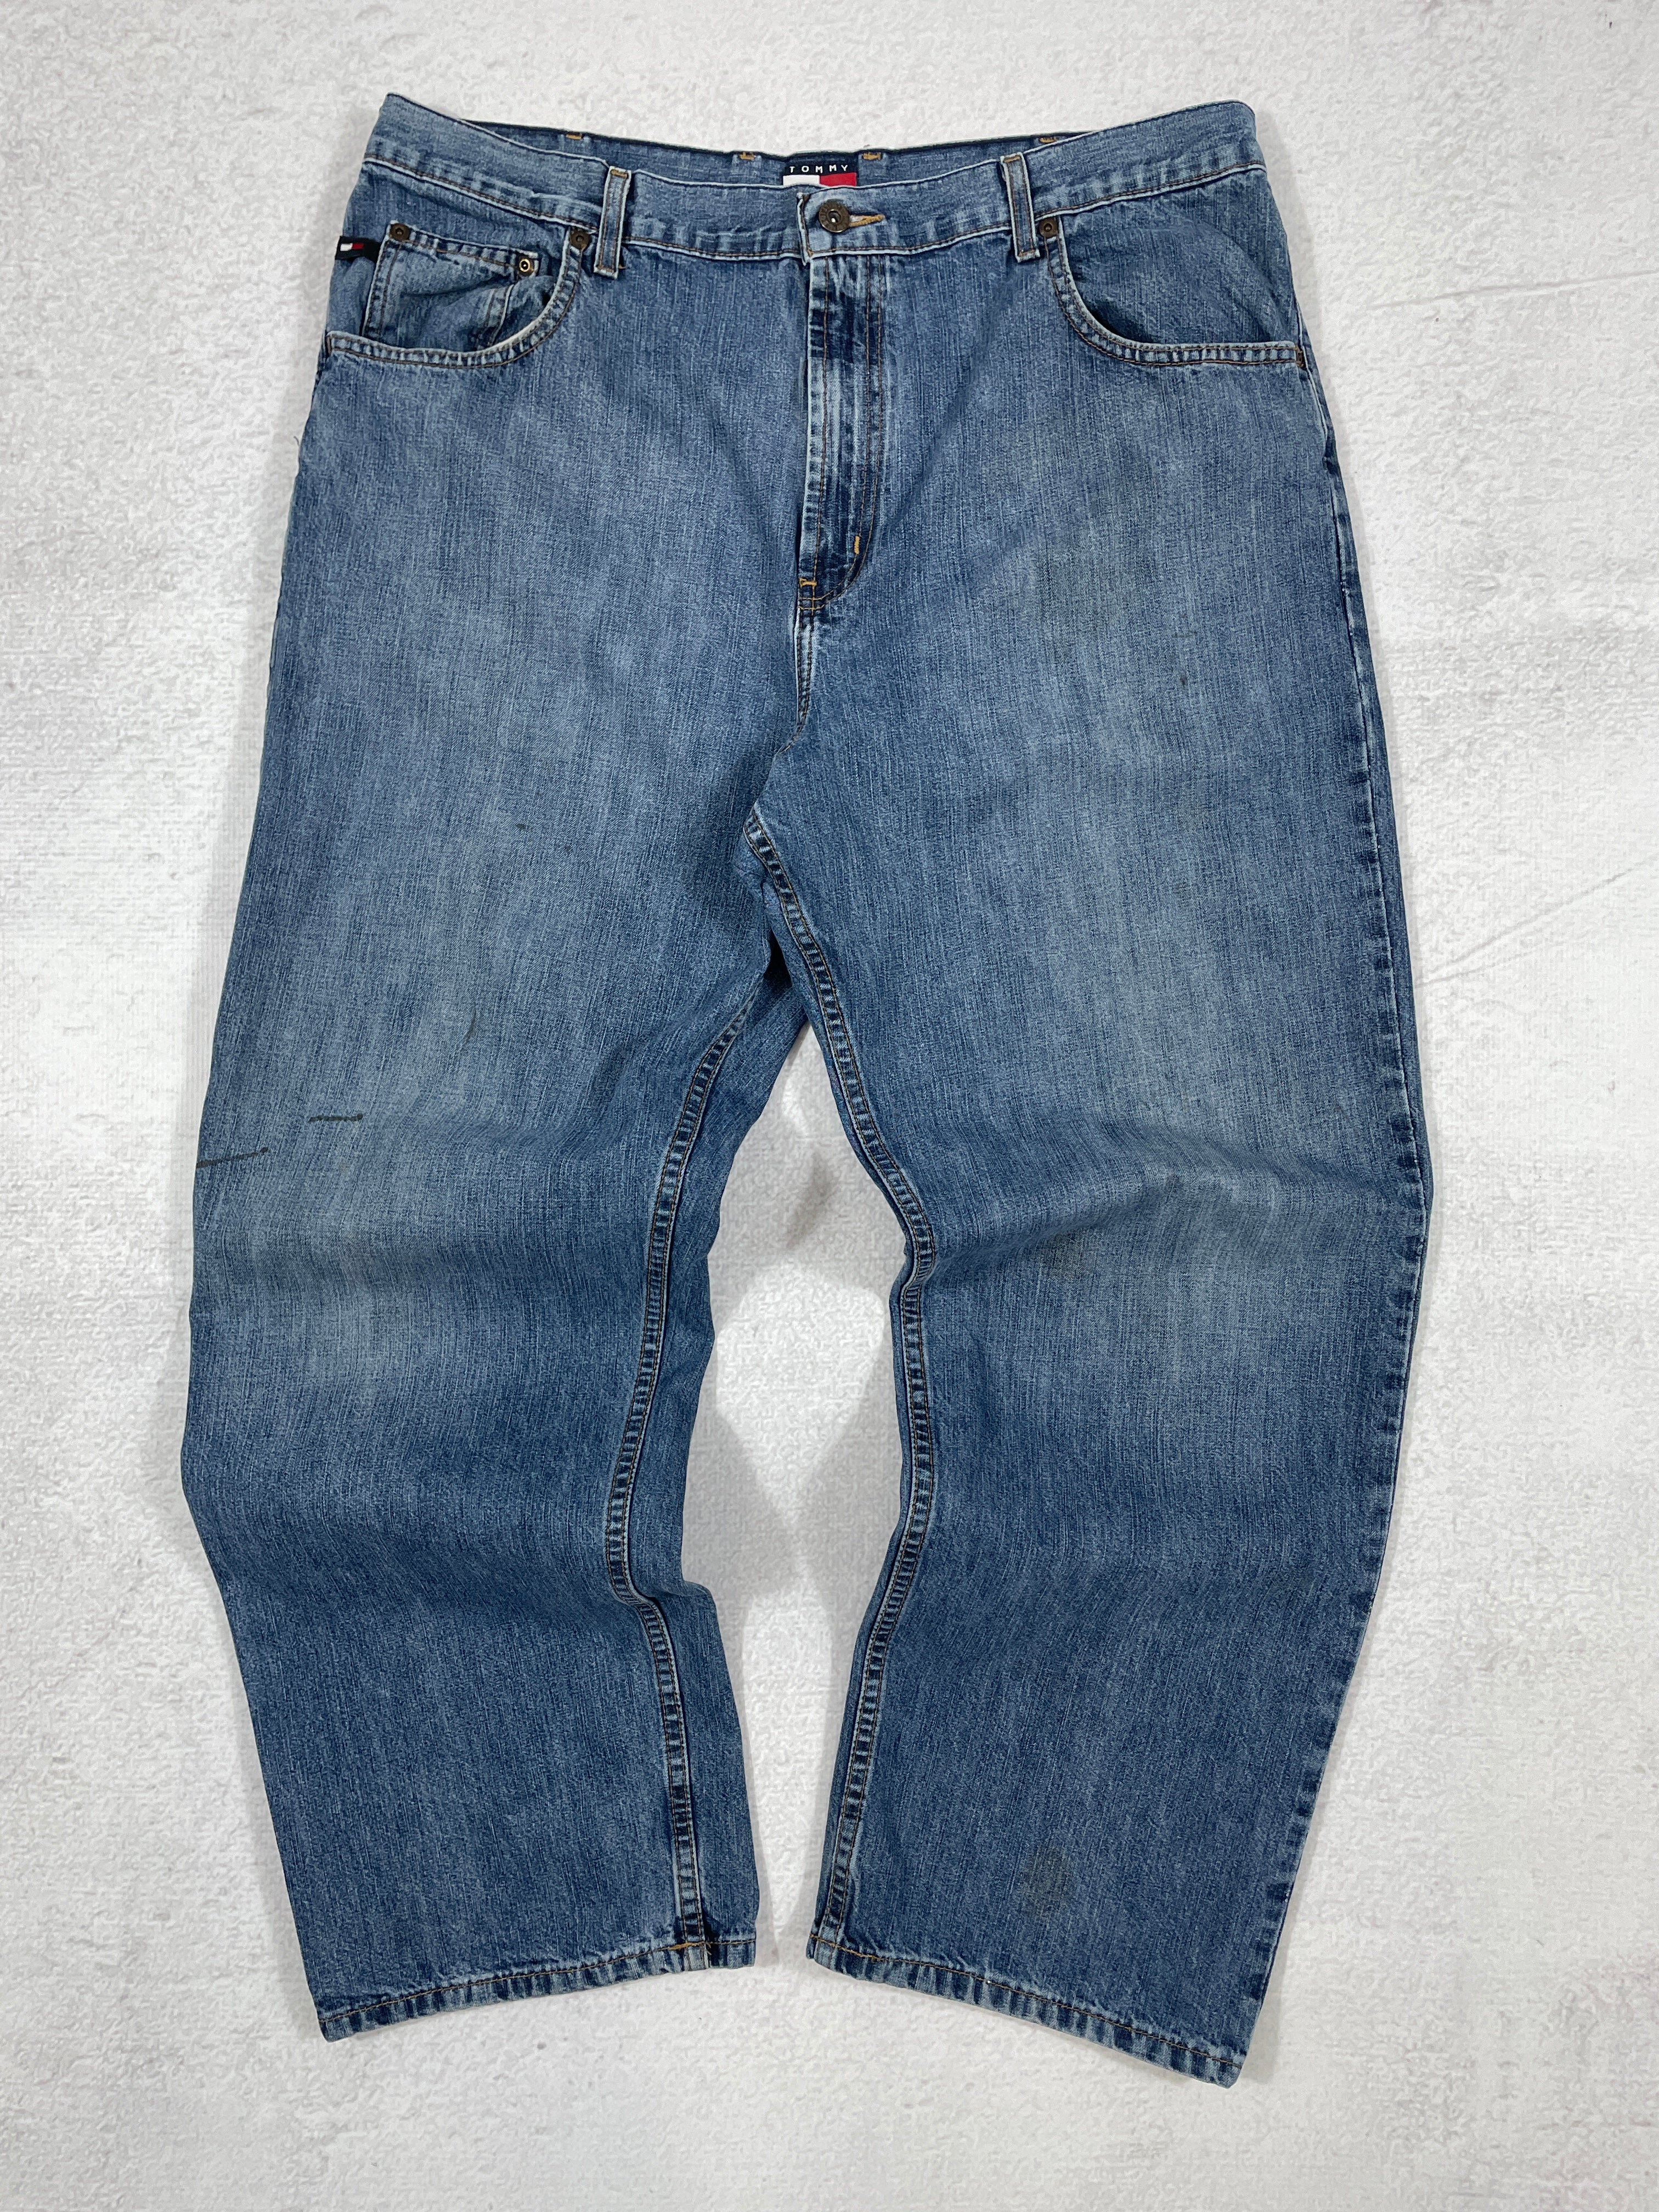 Vintage Tommy Hilfiger Baggy Jeans - Men's 38Wx30L